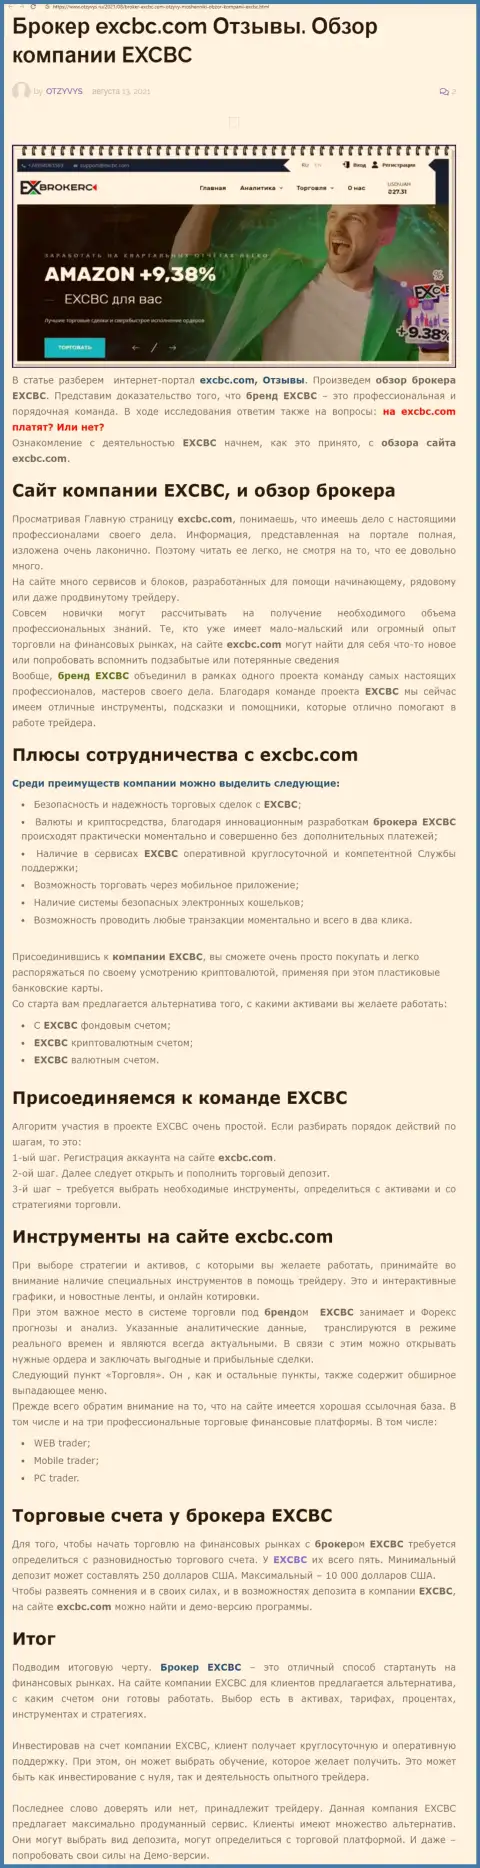 Информационный материал о ФОРЕКС брокере EXCBC на сайте отзывс ру